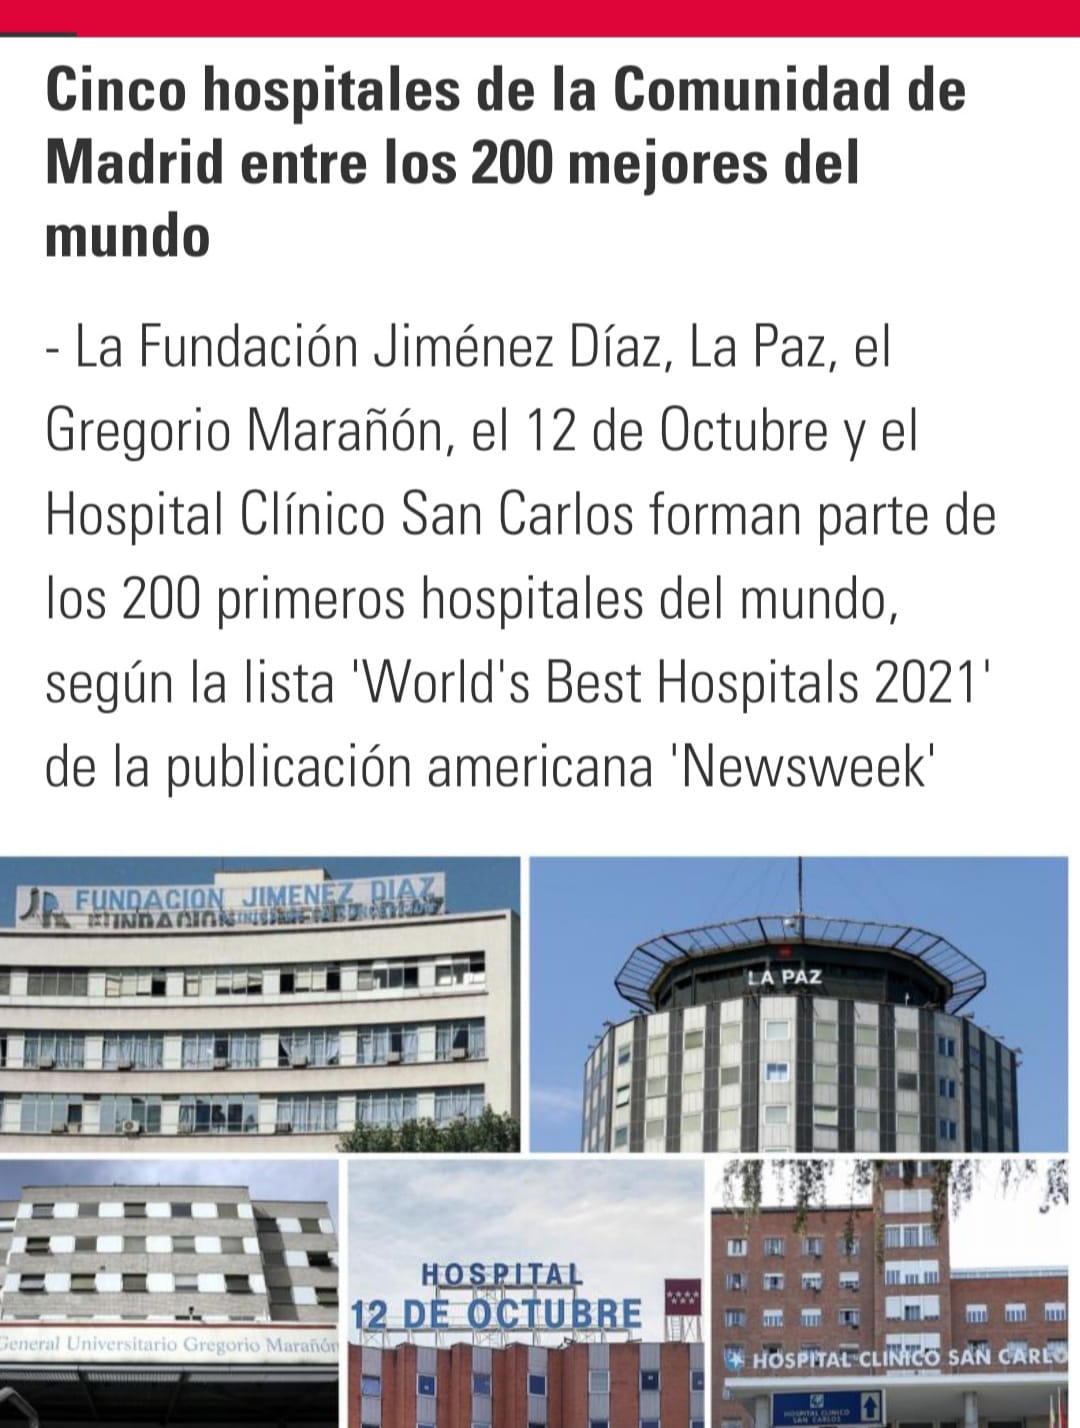 CINCO HOSPITALES DE LA COMUNIDAD DE MADRID ENTRE LOS 200 MEJORES DEL MUNDO